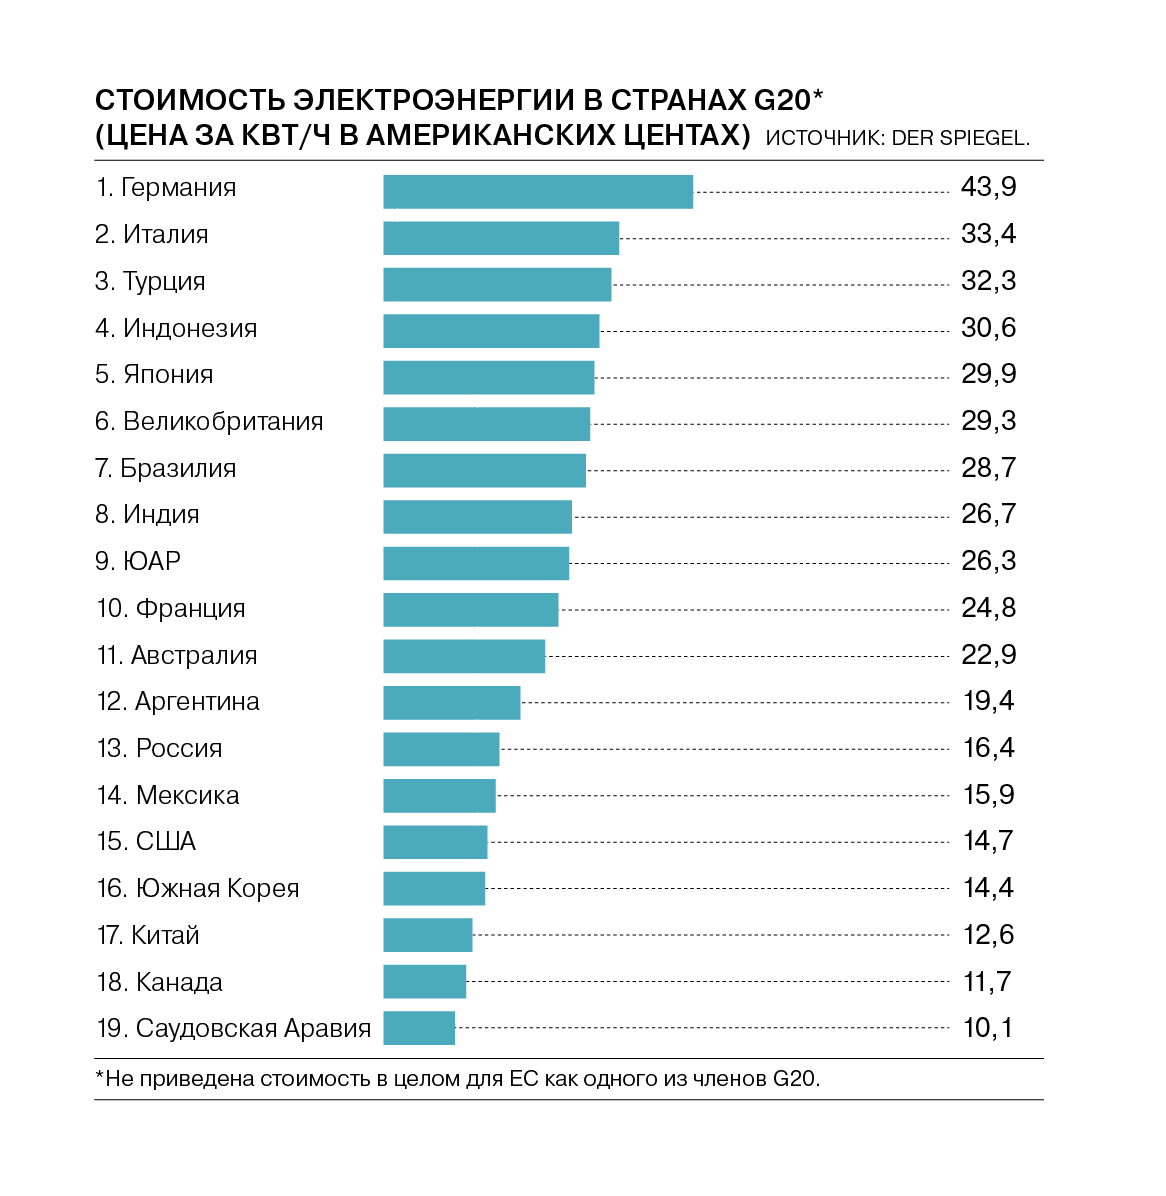 Количество электроэнергии в россии. Стоимость электроэнергии по странам. КВТ электроэнергии. Сравнение стоимости электроэнергии по странам.